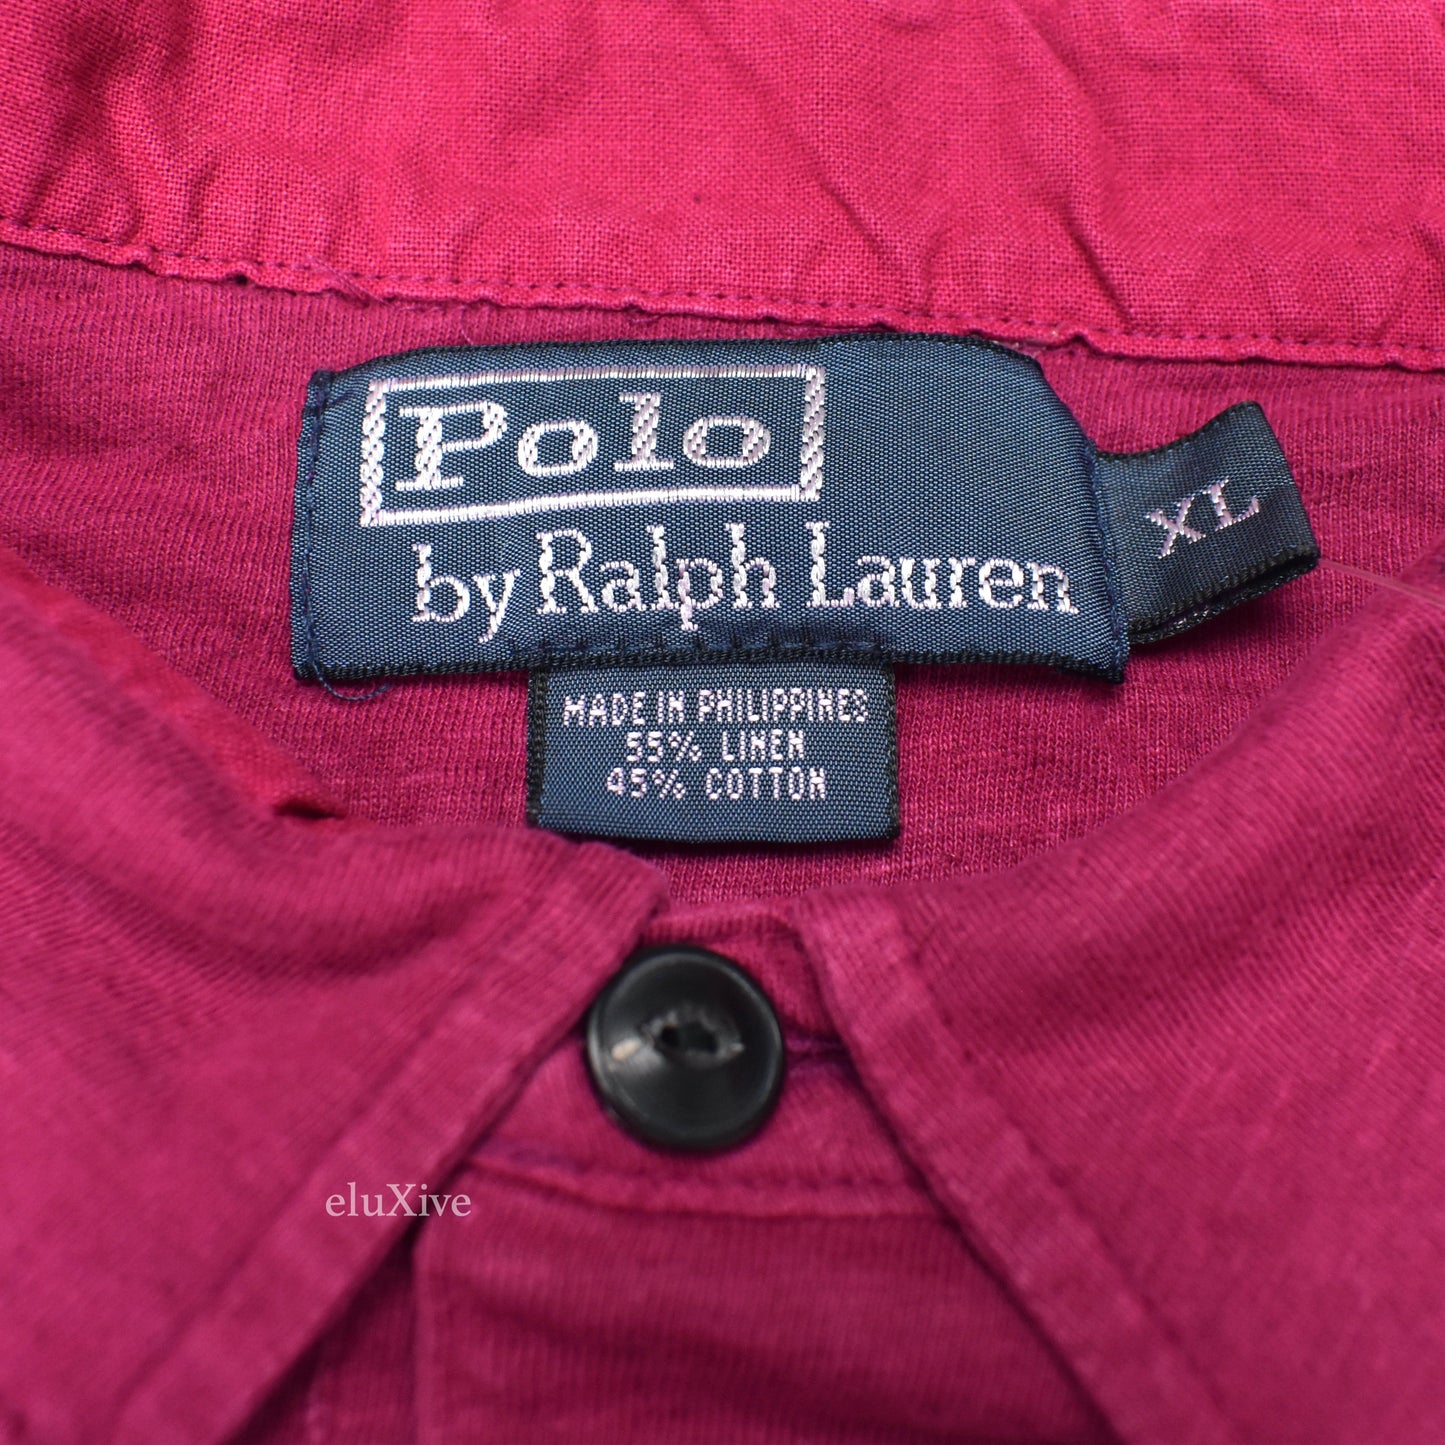 Polo Ralph Lauren - Garment Dyed Pink Shirt